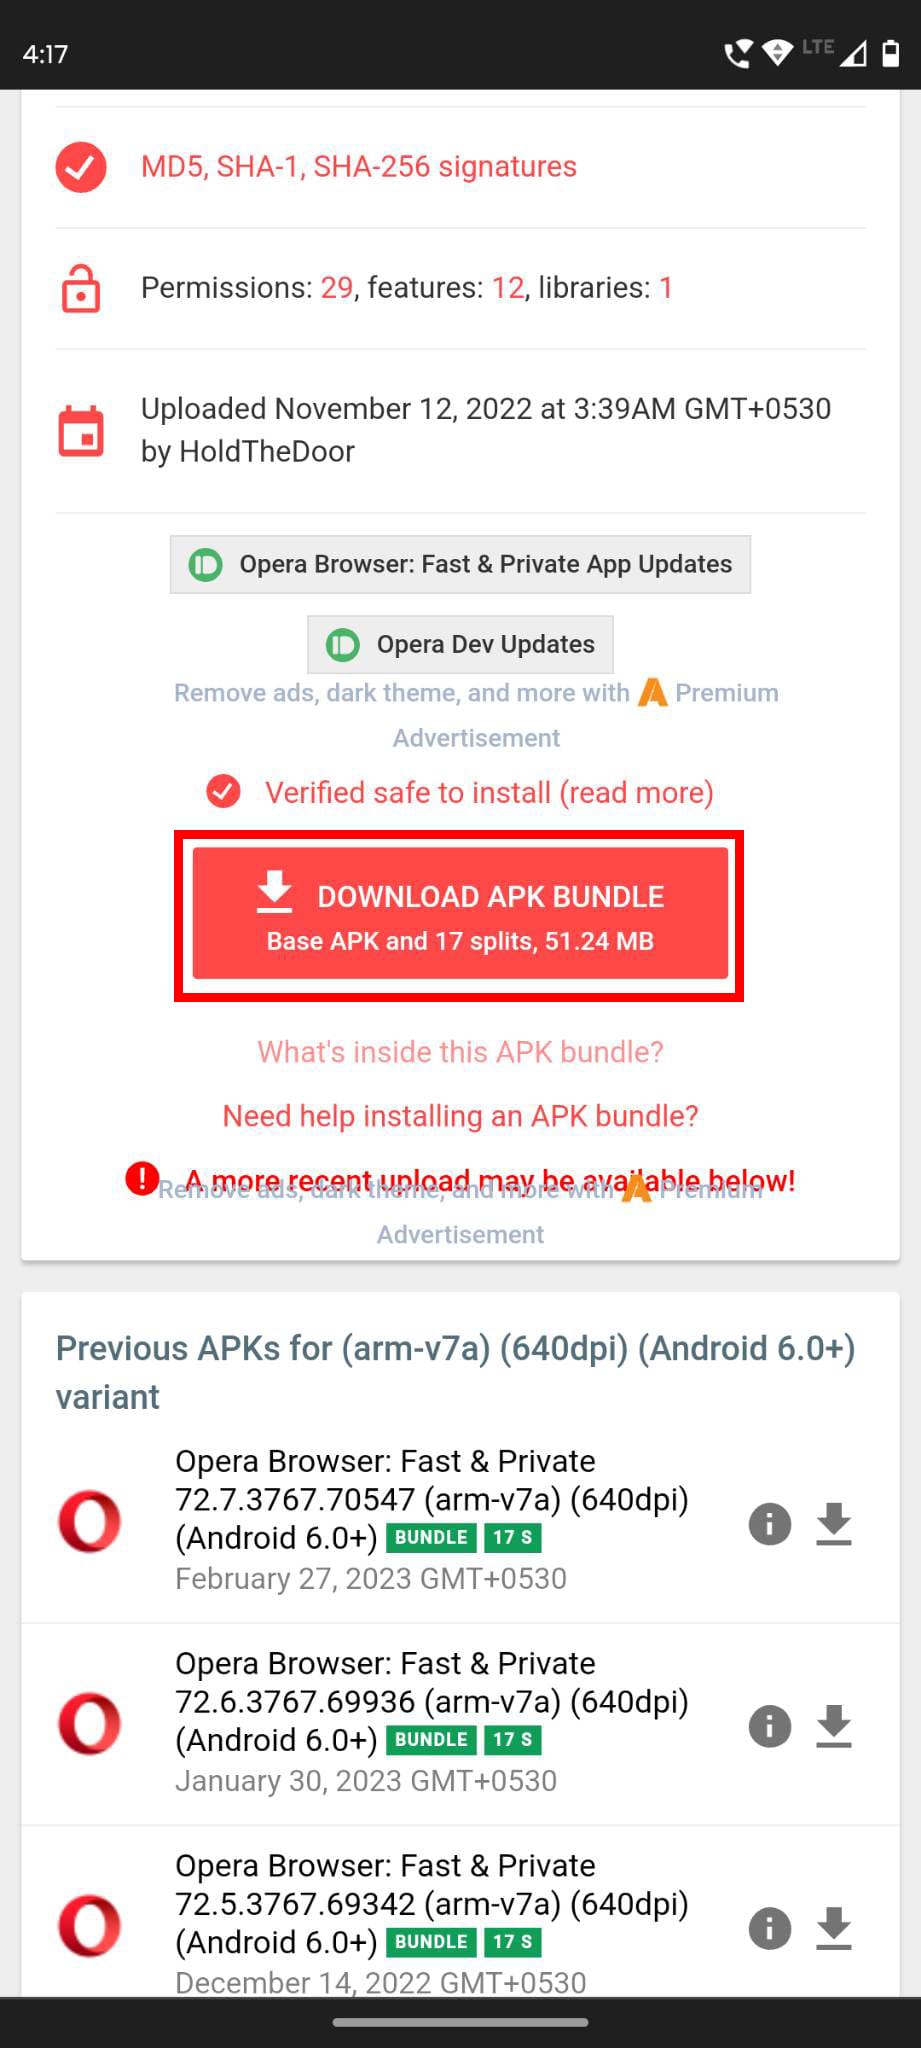 The Download APK Bundle button